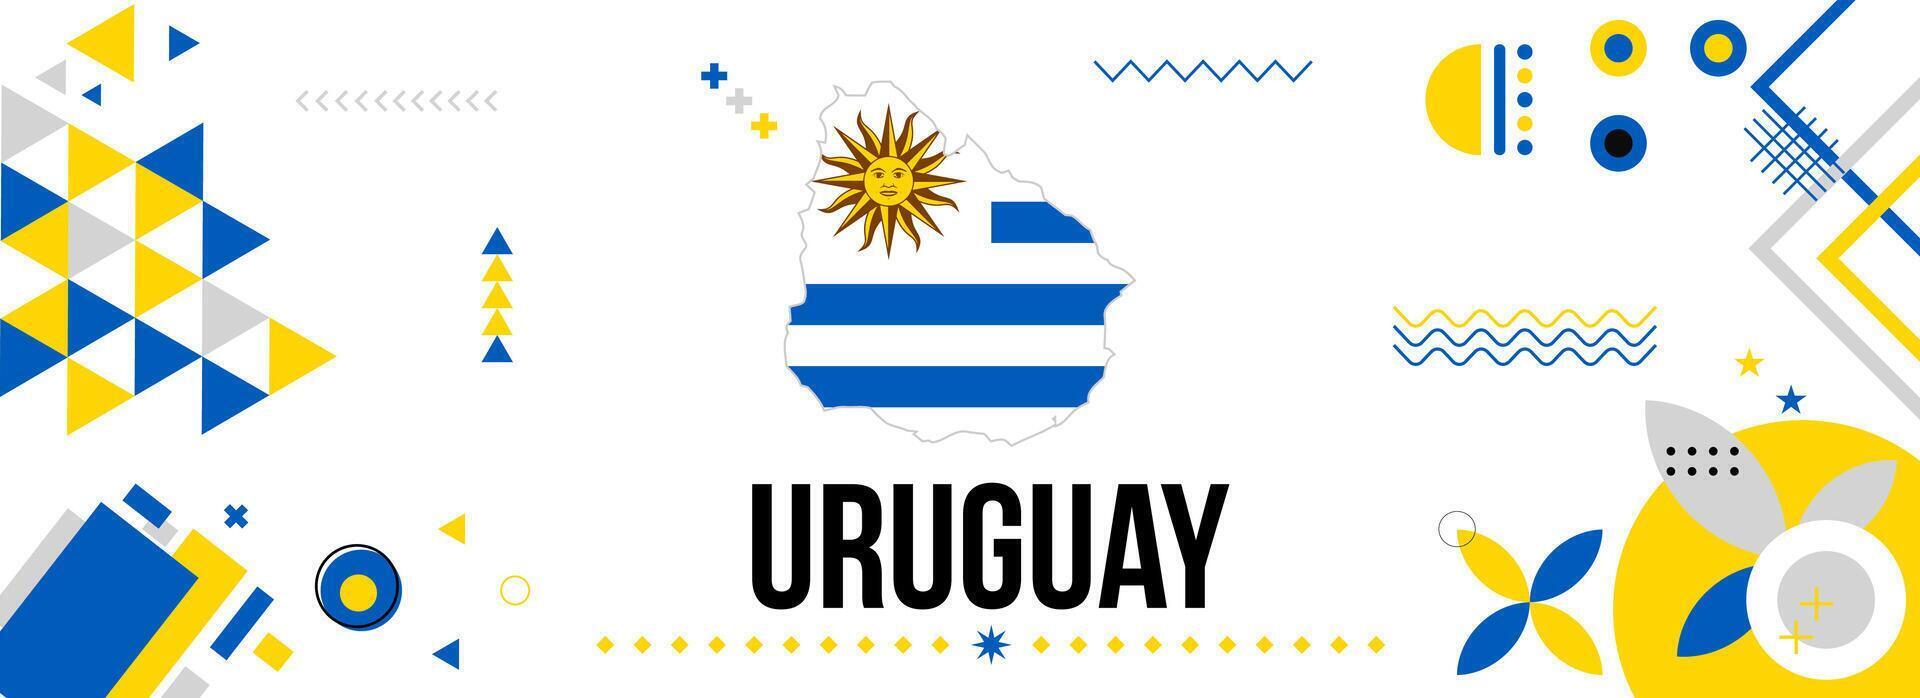 Uruguay nationale ou indépendance journée bannière pour pays fête. drapeau et carte de Uruguay avec moderne rétro conception avec typorgaphie abstrait géométrique Icônes. vecteur illustration.